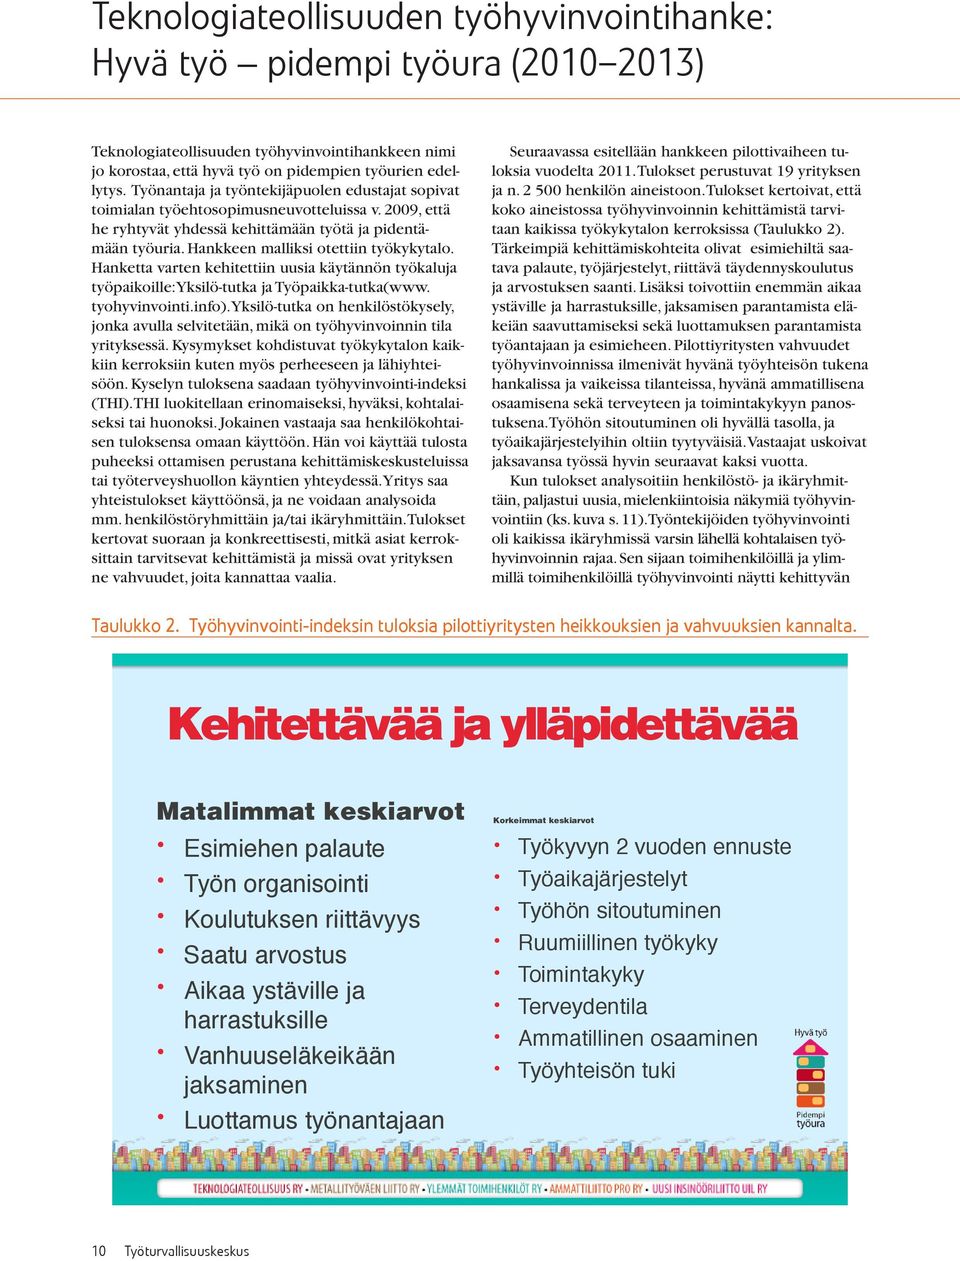 Hankkeen malliksi otettiin työkykytalo. Hanketta varten kehitettiin uusia käytännön työkaluja työpaikoille: Yksilö-tutka ja Työpaikka-tutka(www. tyohyvinvointi.info).